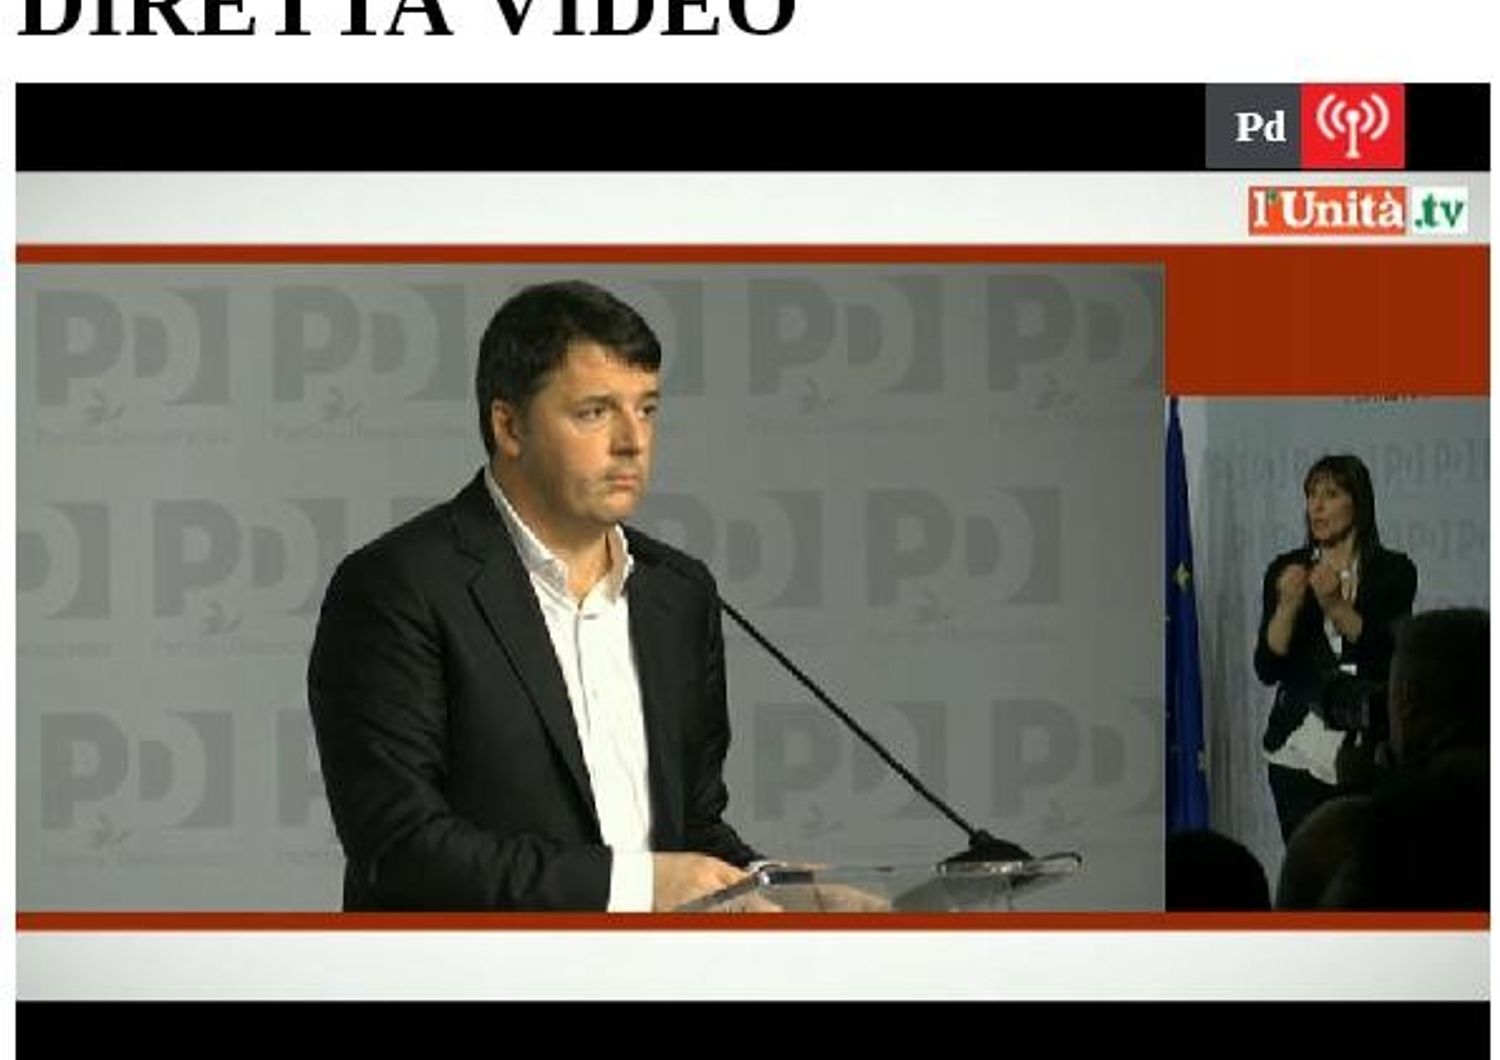 &nbsp;Diretta Video assemblea Pd (http://www.unita.tv/dirette/diretta-tv/)